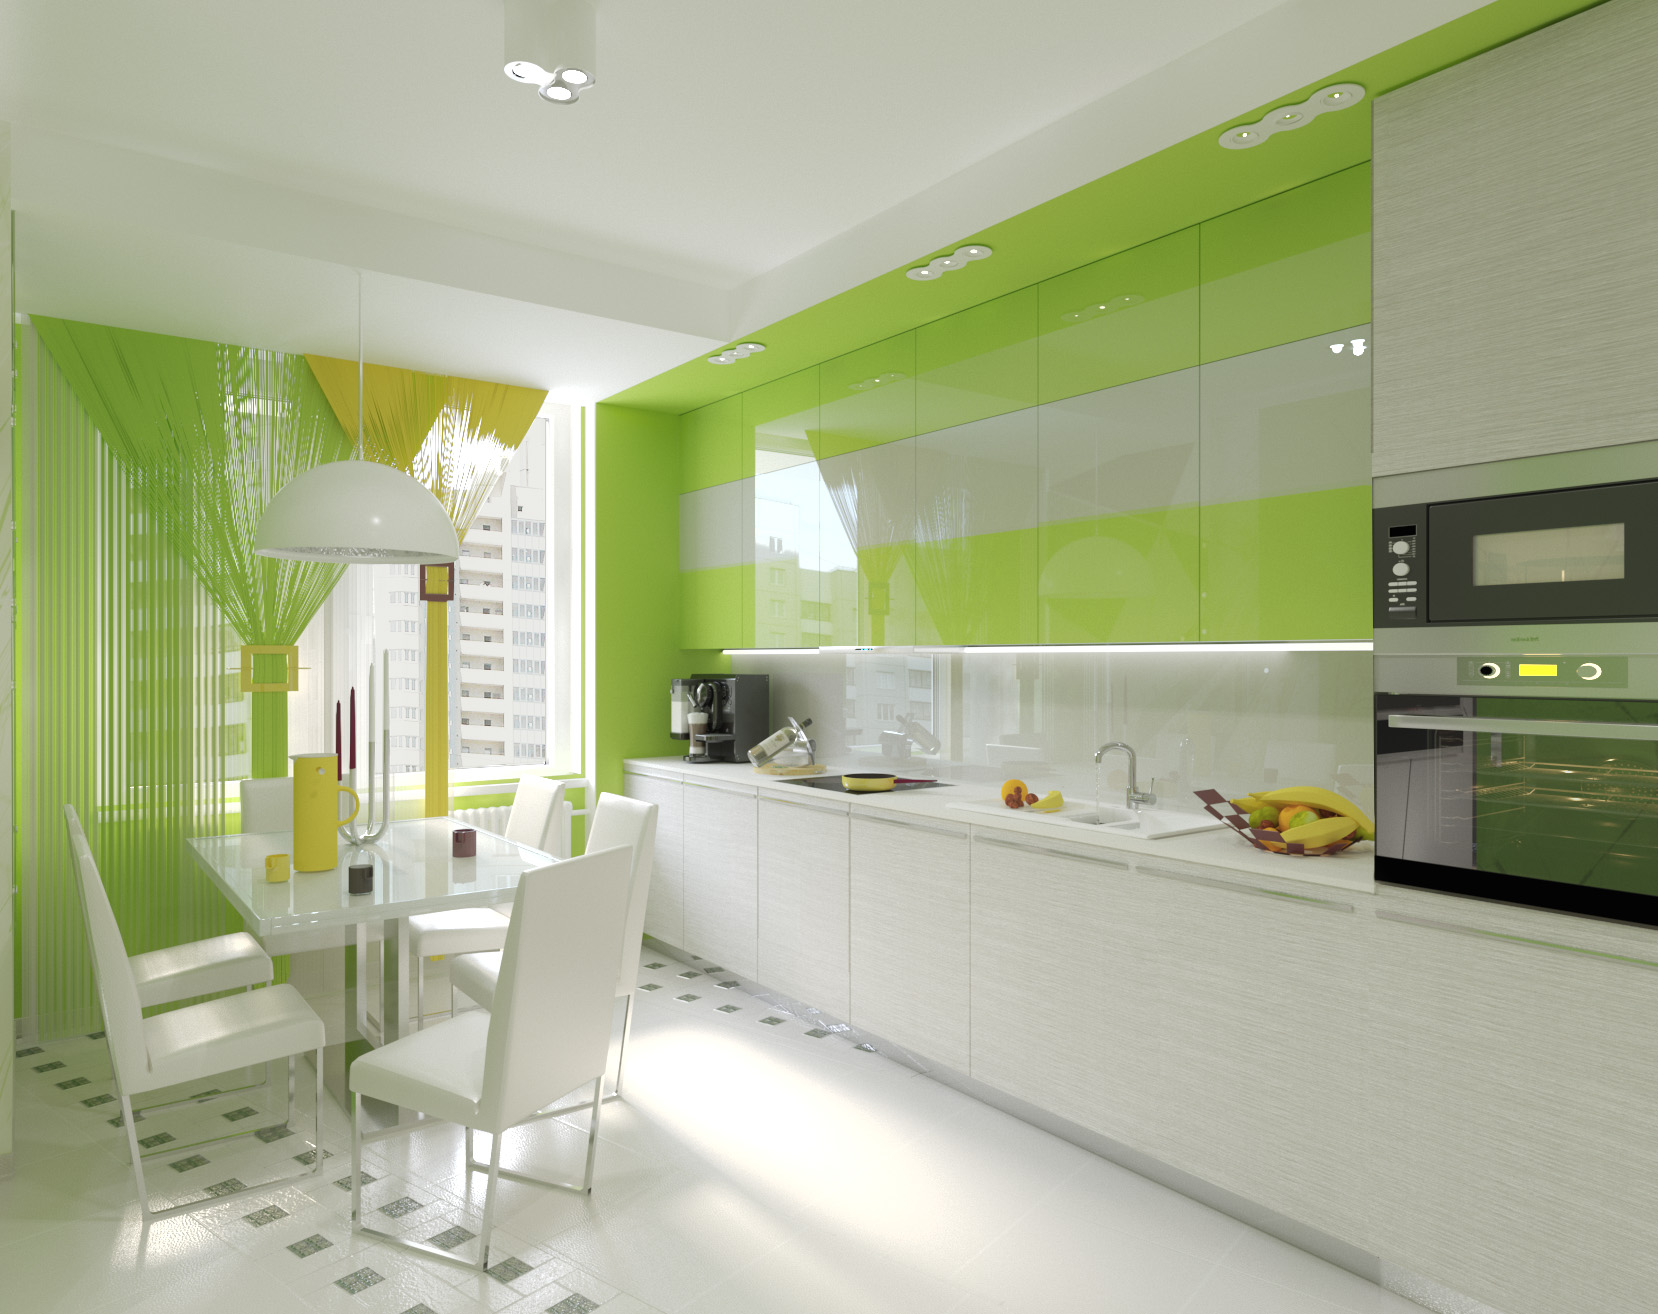 Дизайн узкой кухни: расстановка мебели и техники, цветовое оформление стен и организация освещения комнаты